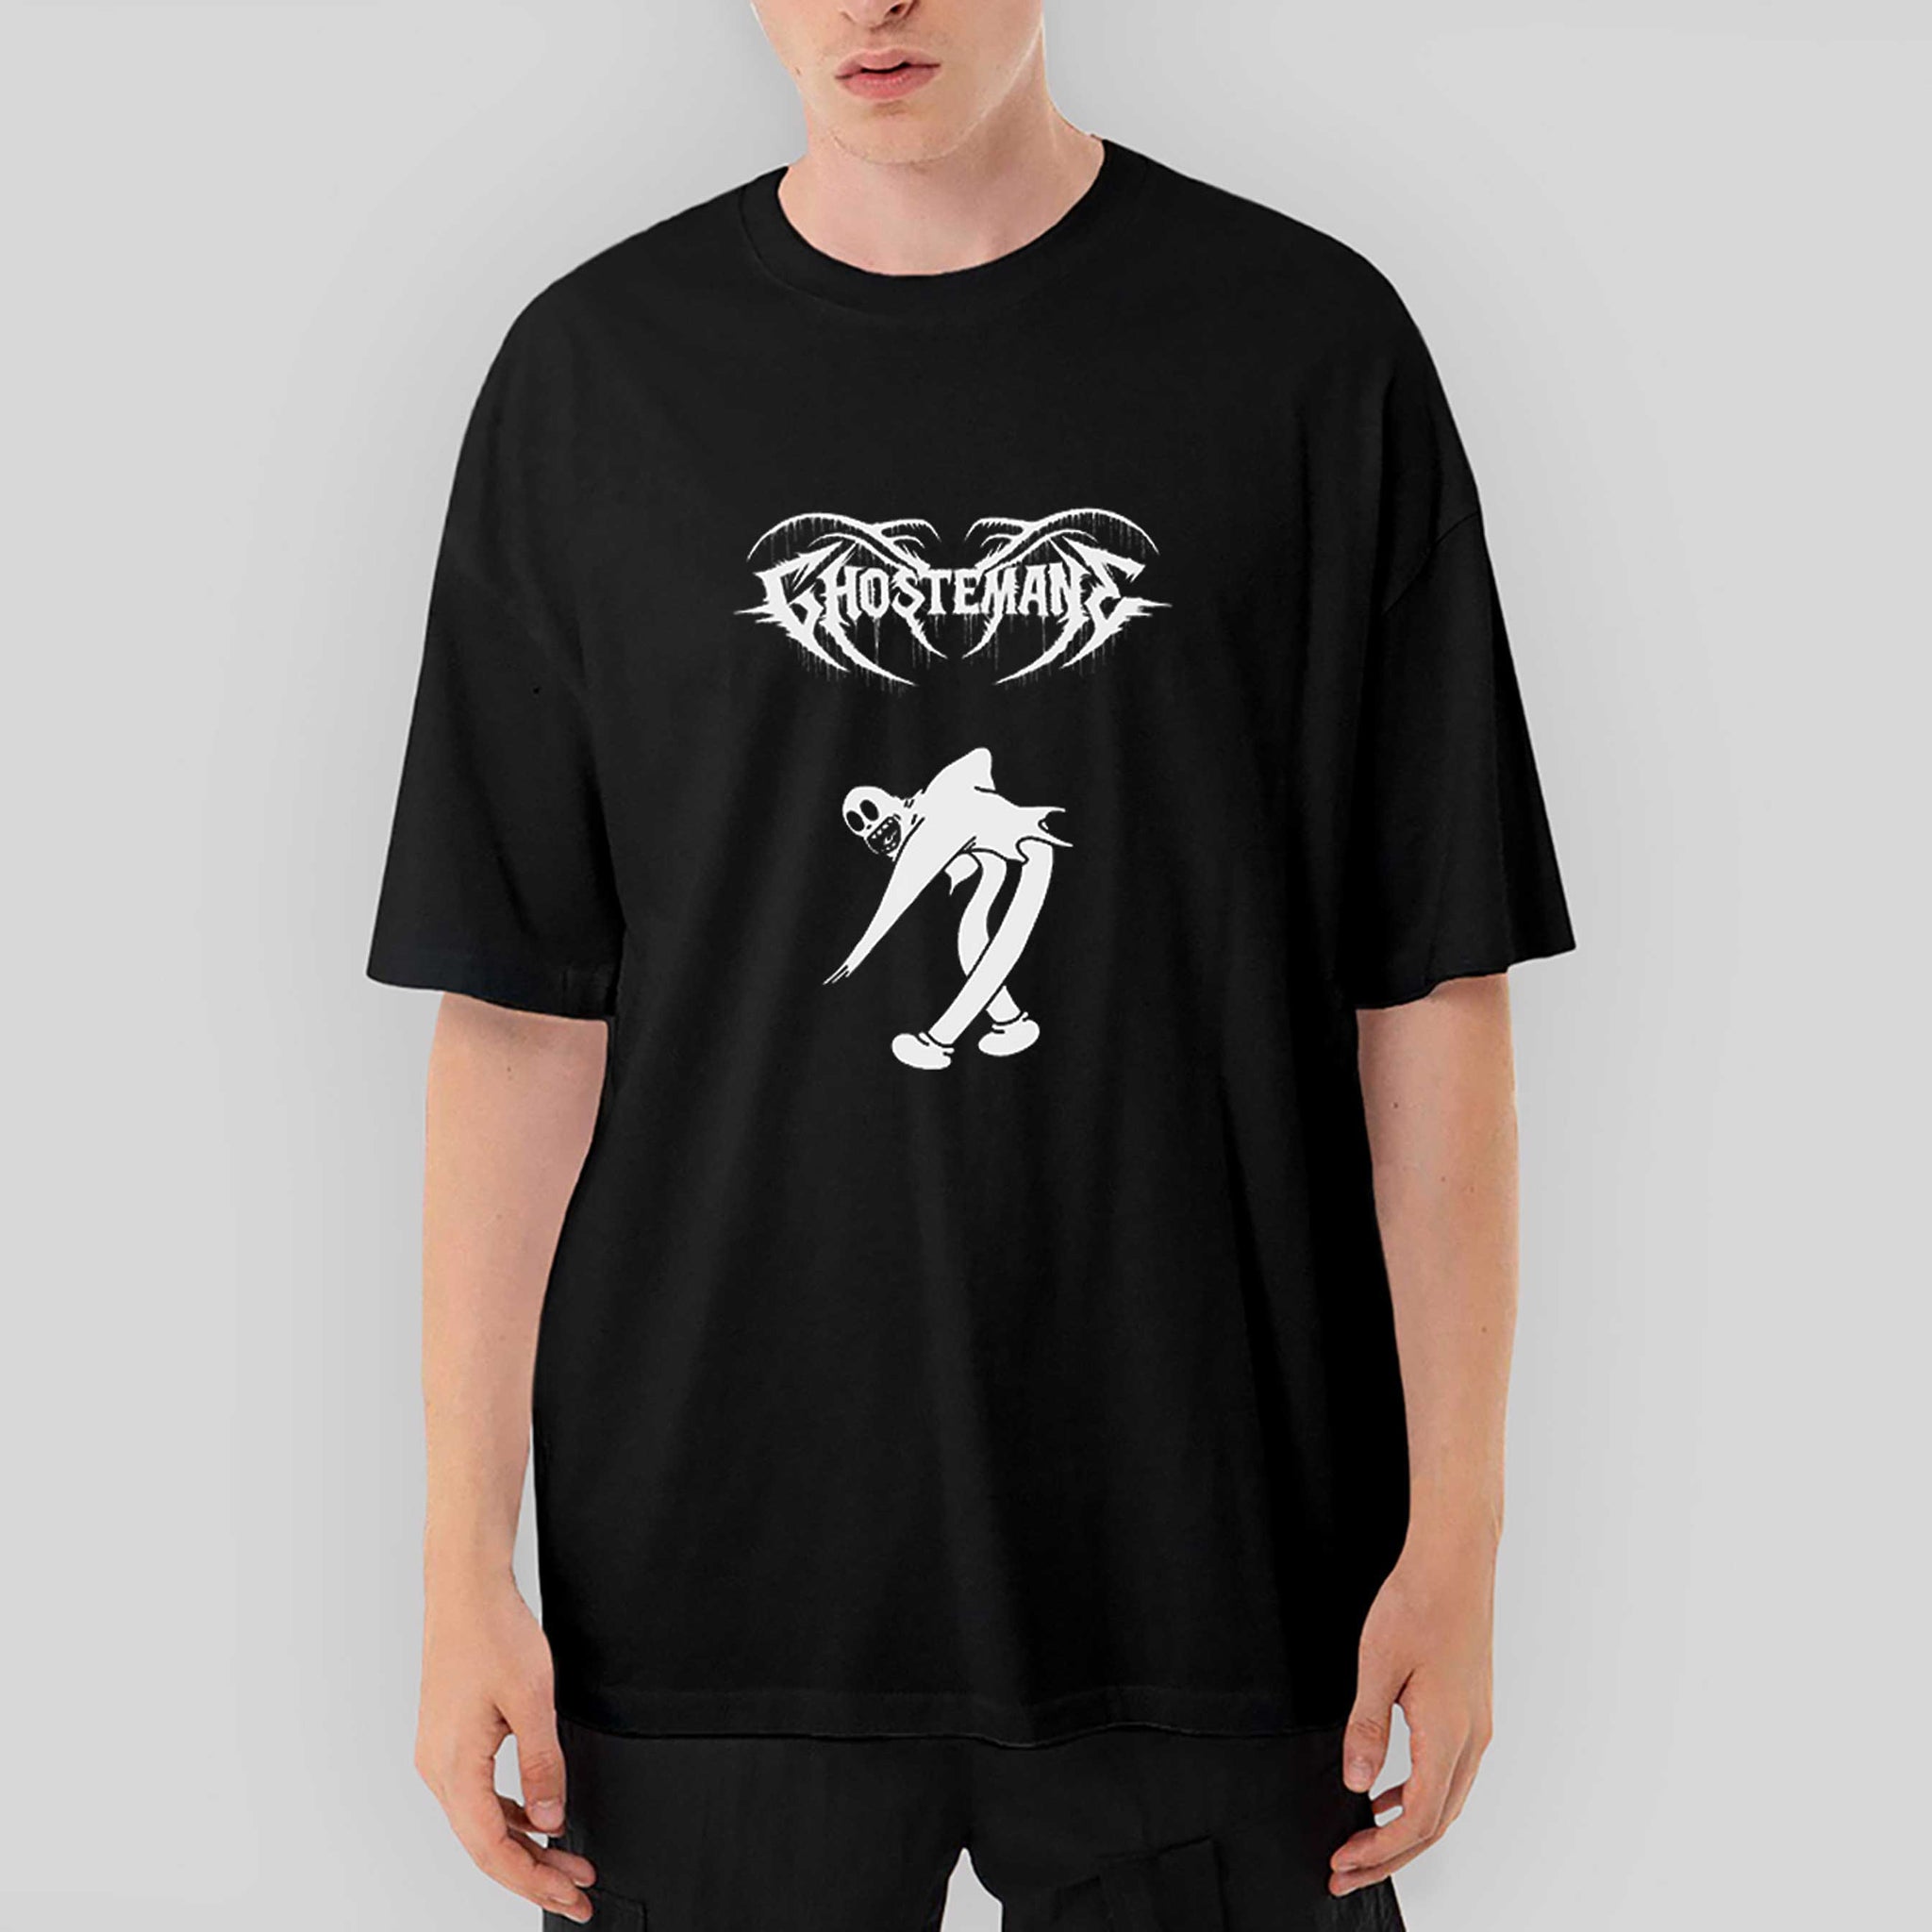 Ghostemane Classic Oversize Siyah Tişört